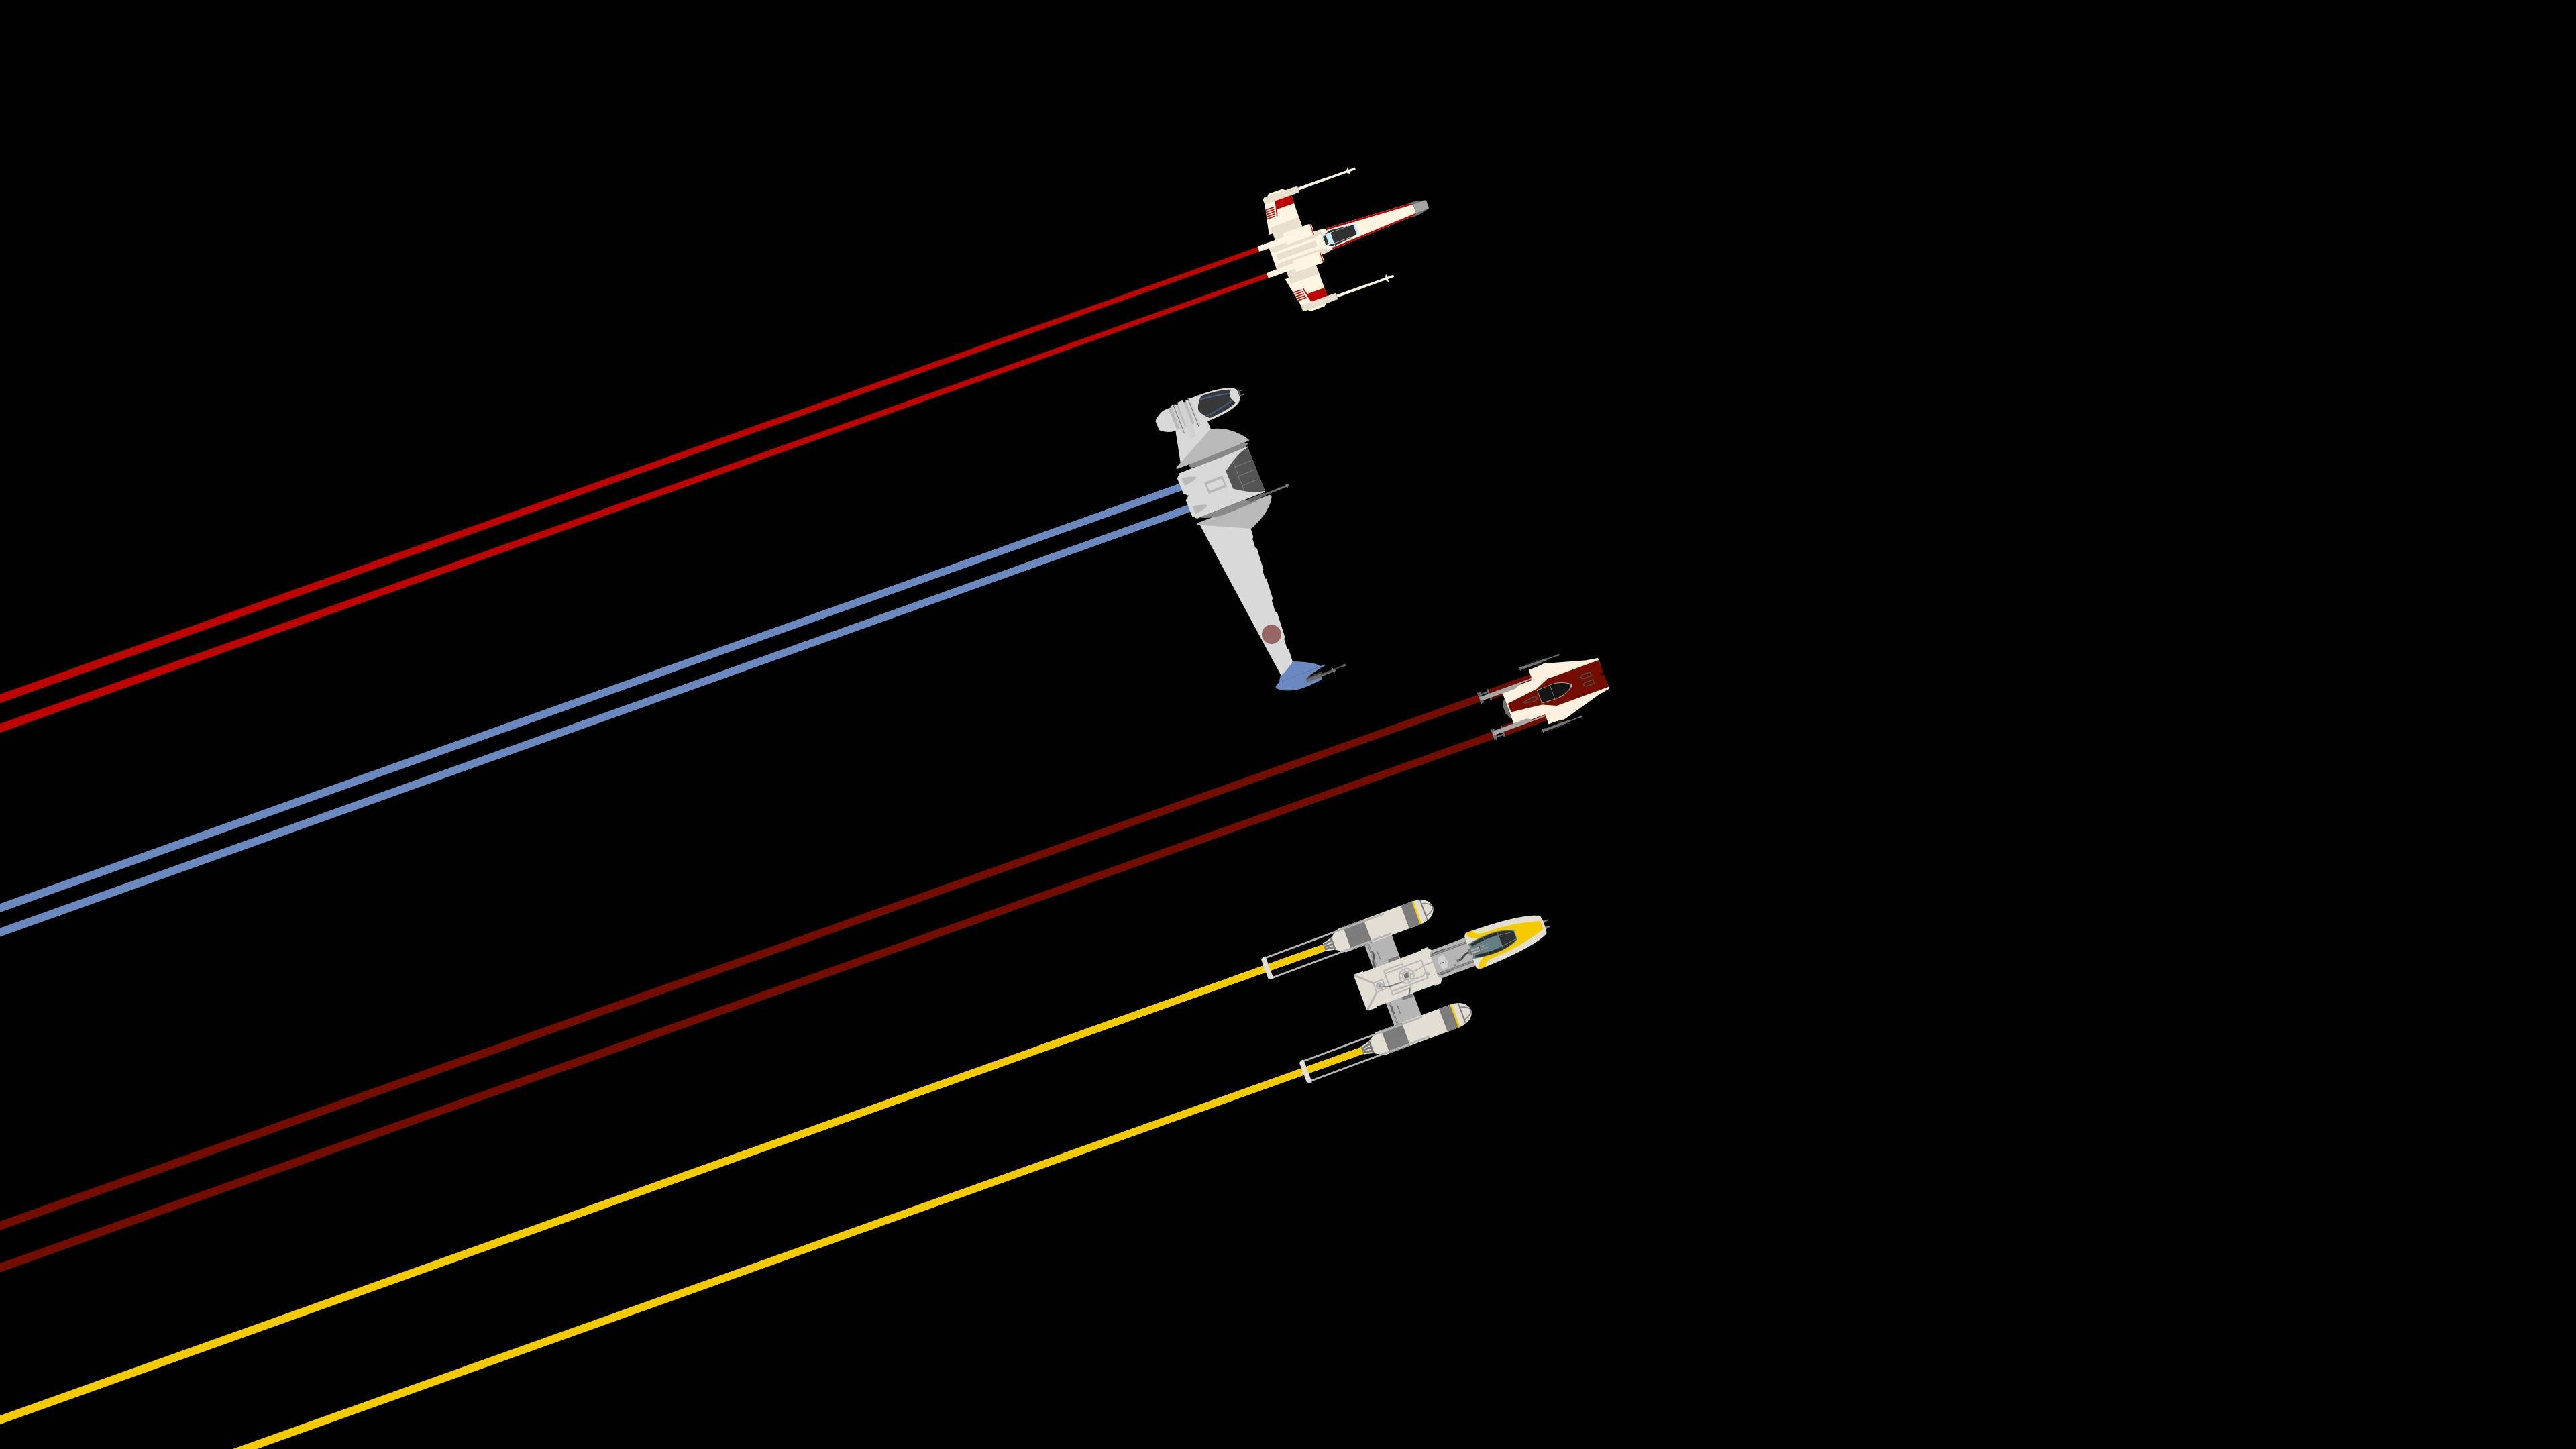 Cute Minimalist Star Wars Tie Fighter Aircraft Wallpaper